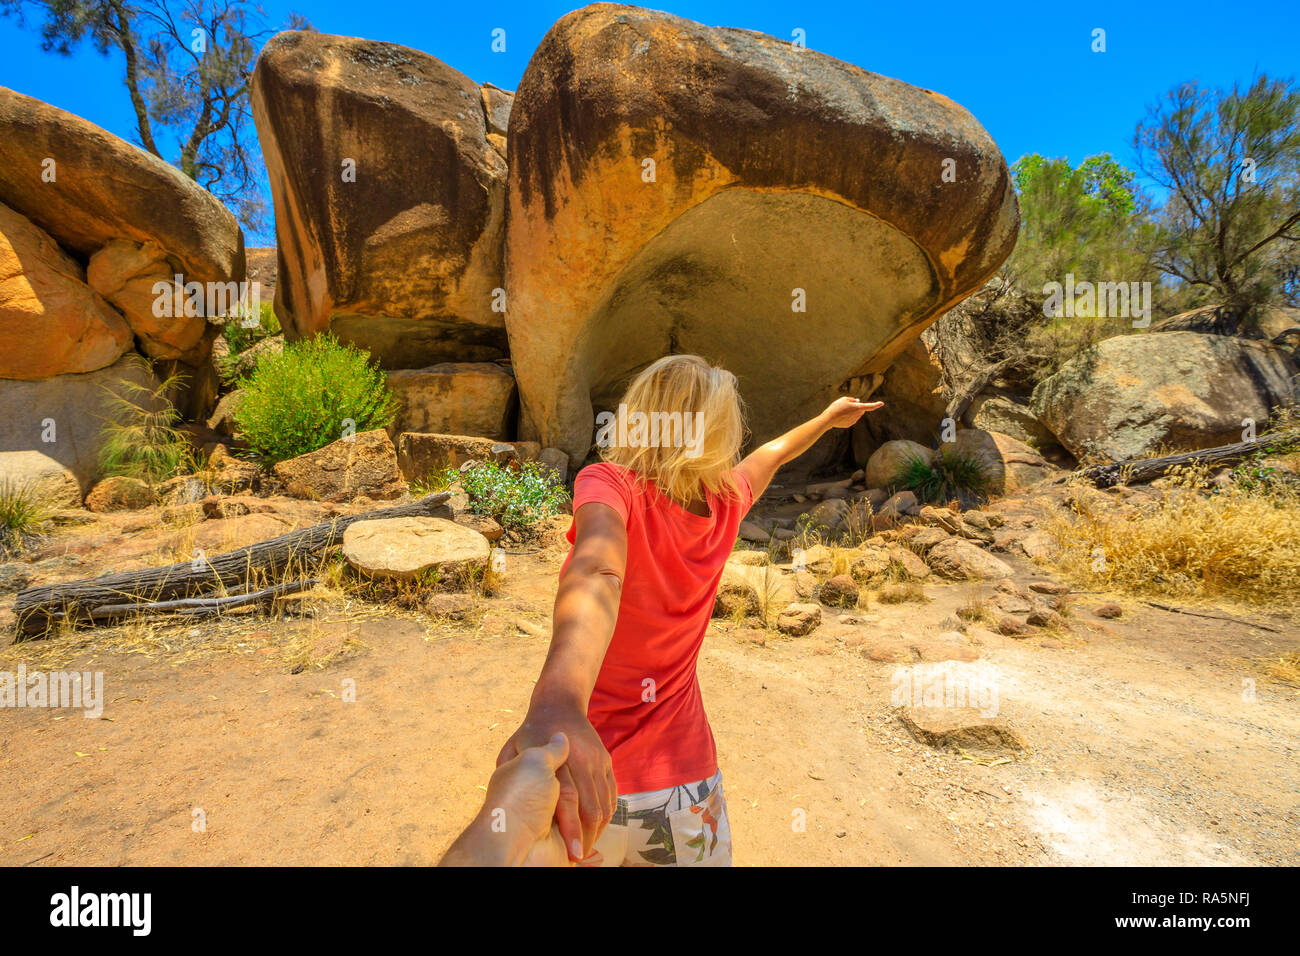 Folgen Sie mir, Frau, Hände halten in Hippo's Yawn, ein Hippo-geformten Felsen in der Nähe der Wave Rock in Hyden, australische Outback, Western Australia. Konzept der Reise von touristischen Reisenden, der Mann mit der Hand. Stockfoto